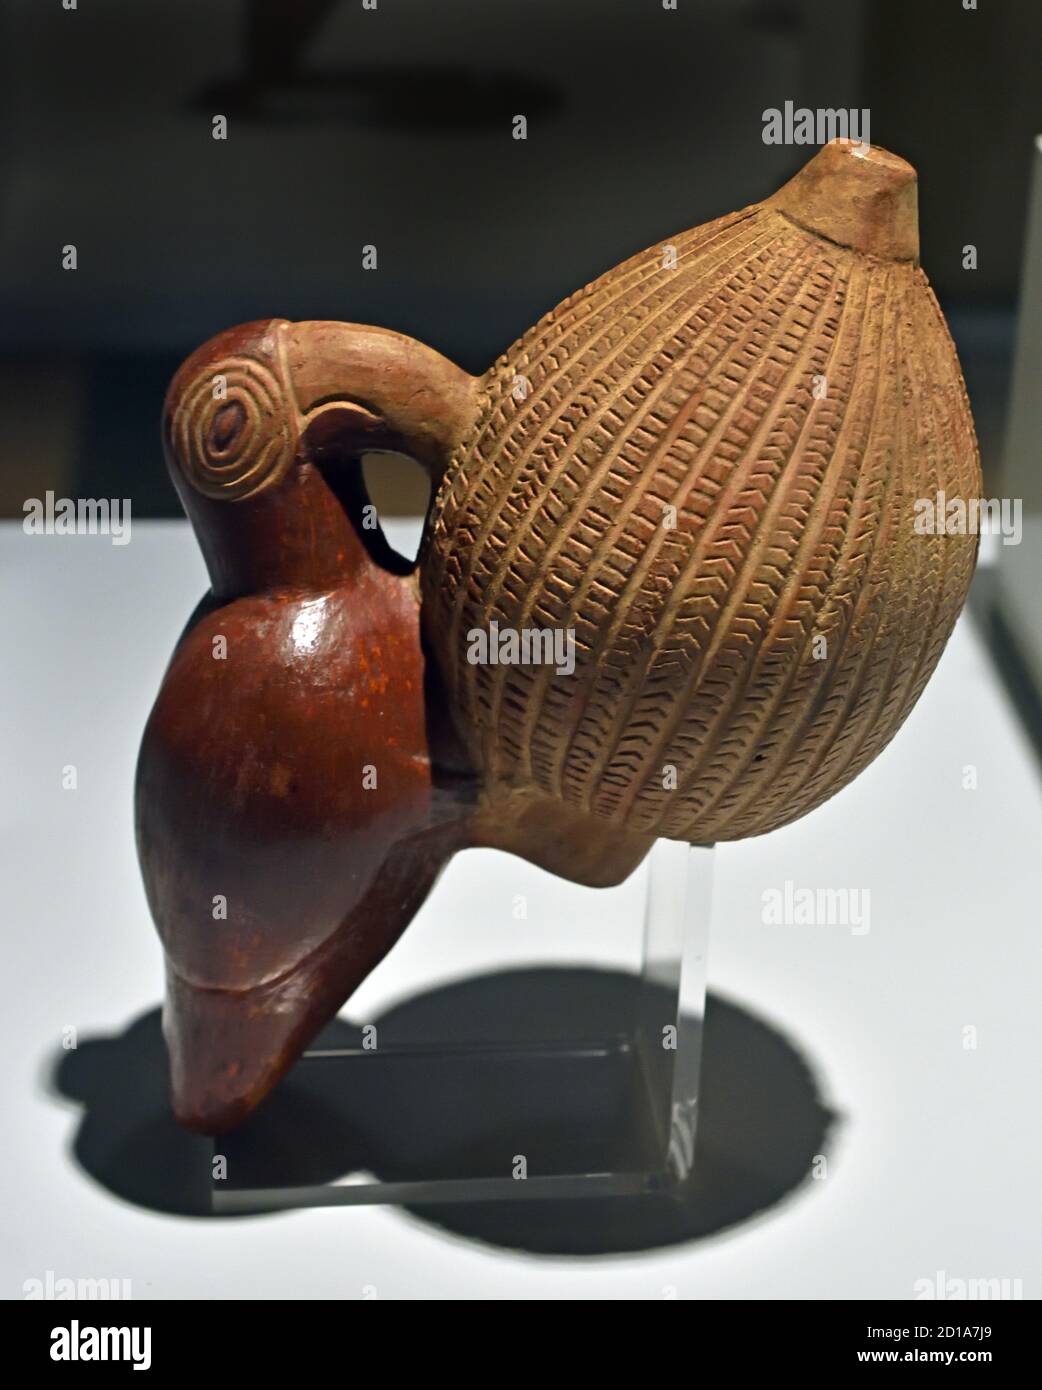 Bateau représentant un pakaro mangeant un fruit, UN Chimú Inca récipient en céramique de la fin Horizon 1400-1533 AD Pérou, péruvien, Amérique, Pajaro Banque D'Images